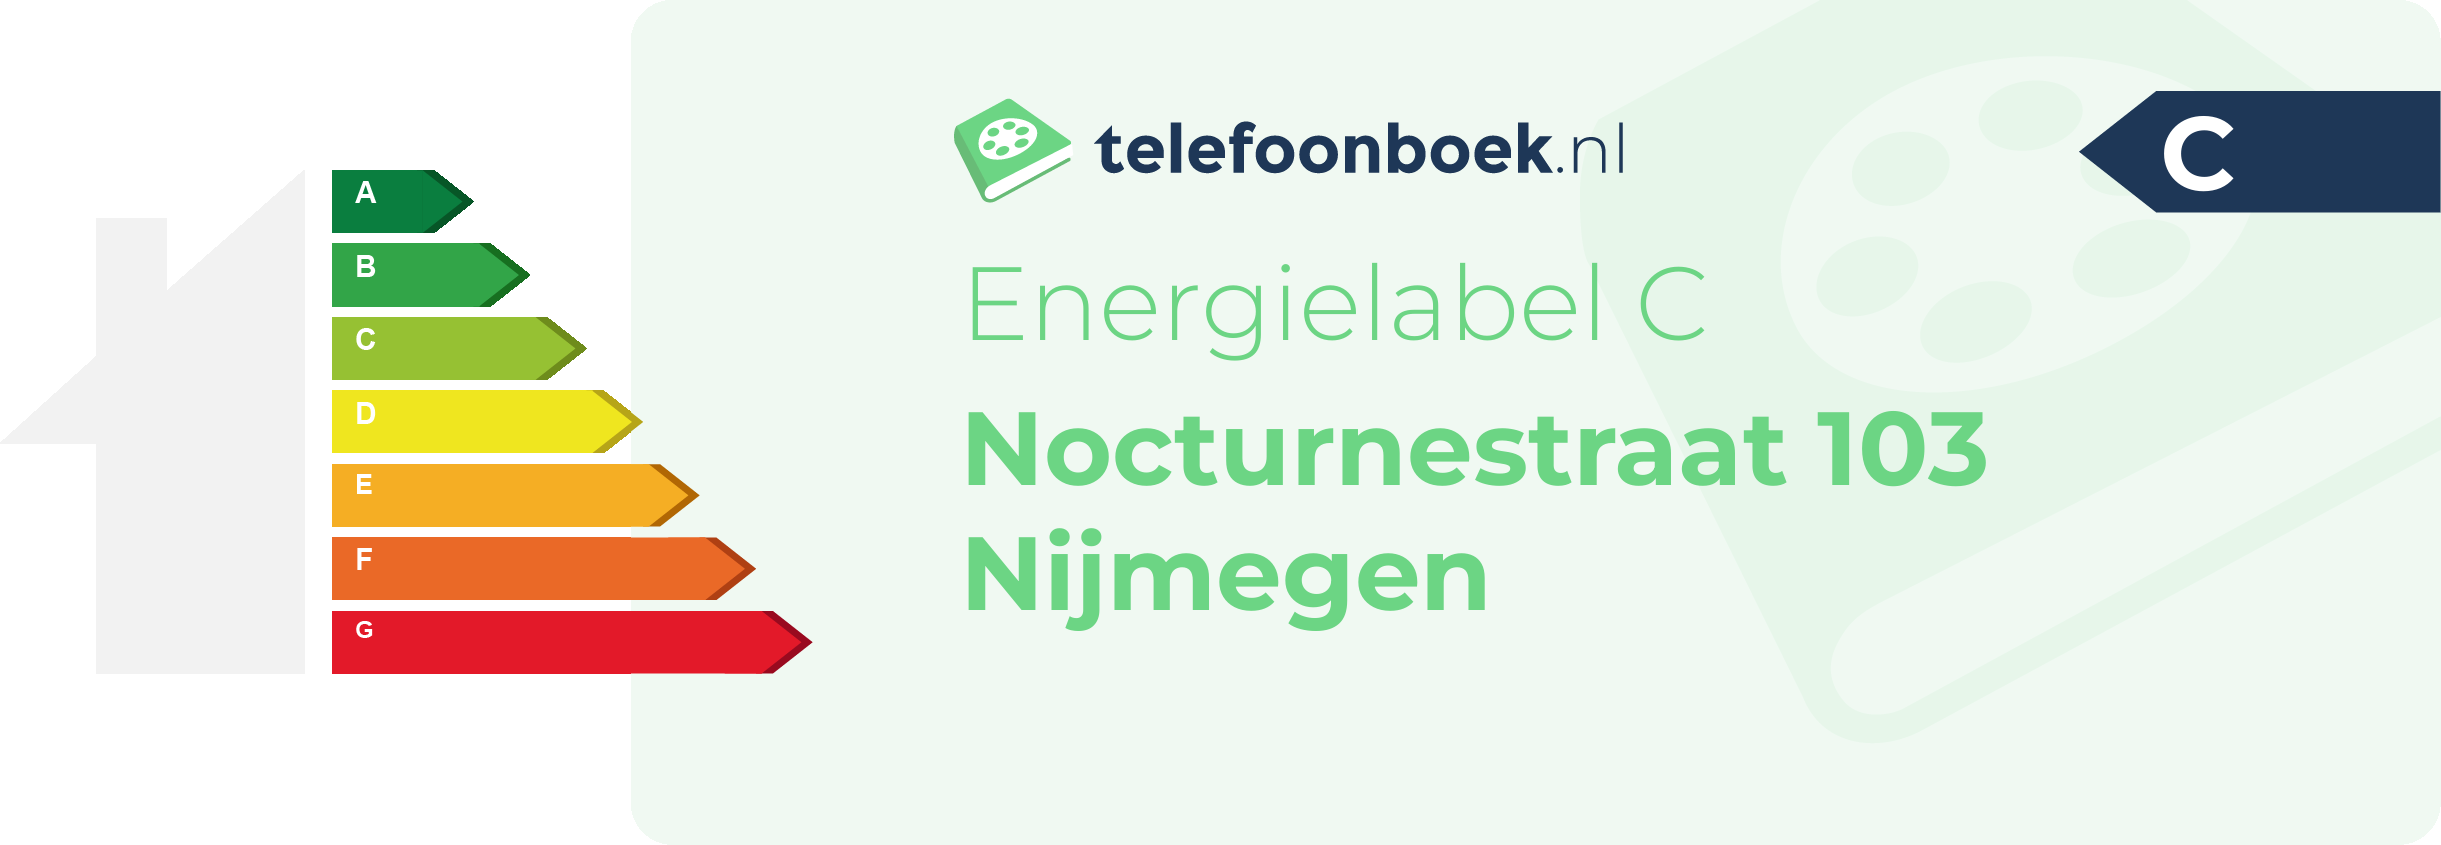 Energielabel Nocturnestraat 103 Nijmegen